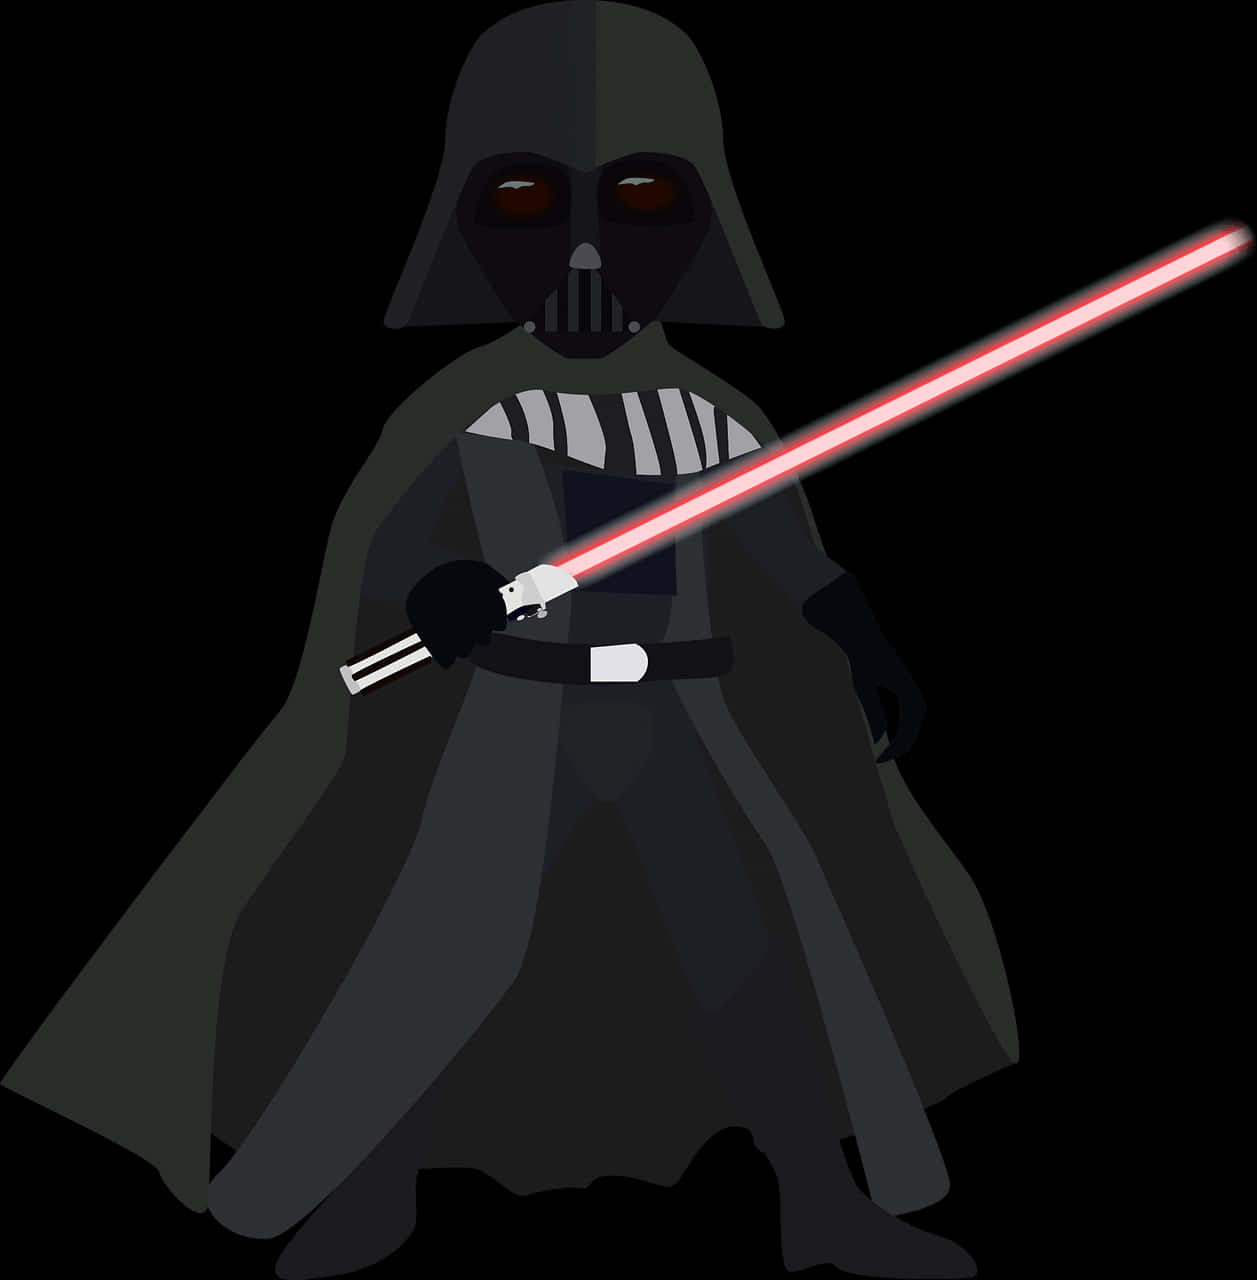 Star Wars Darth Vader Digital Illustration